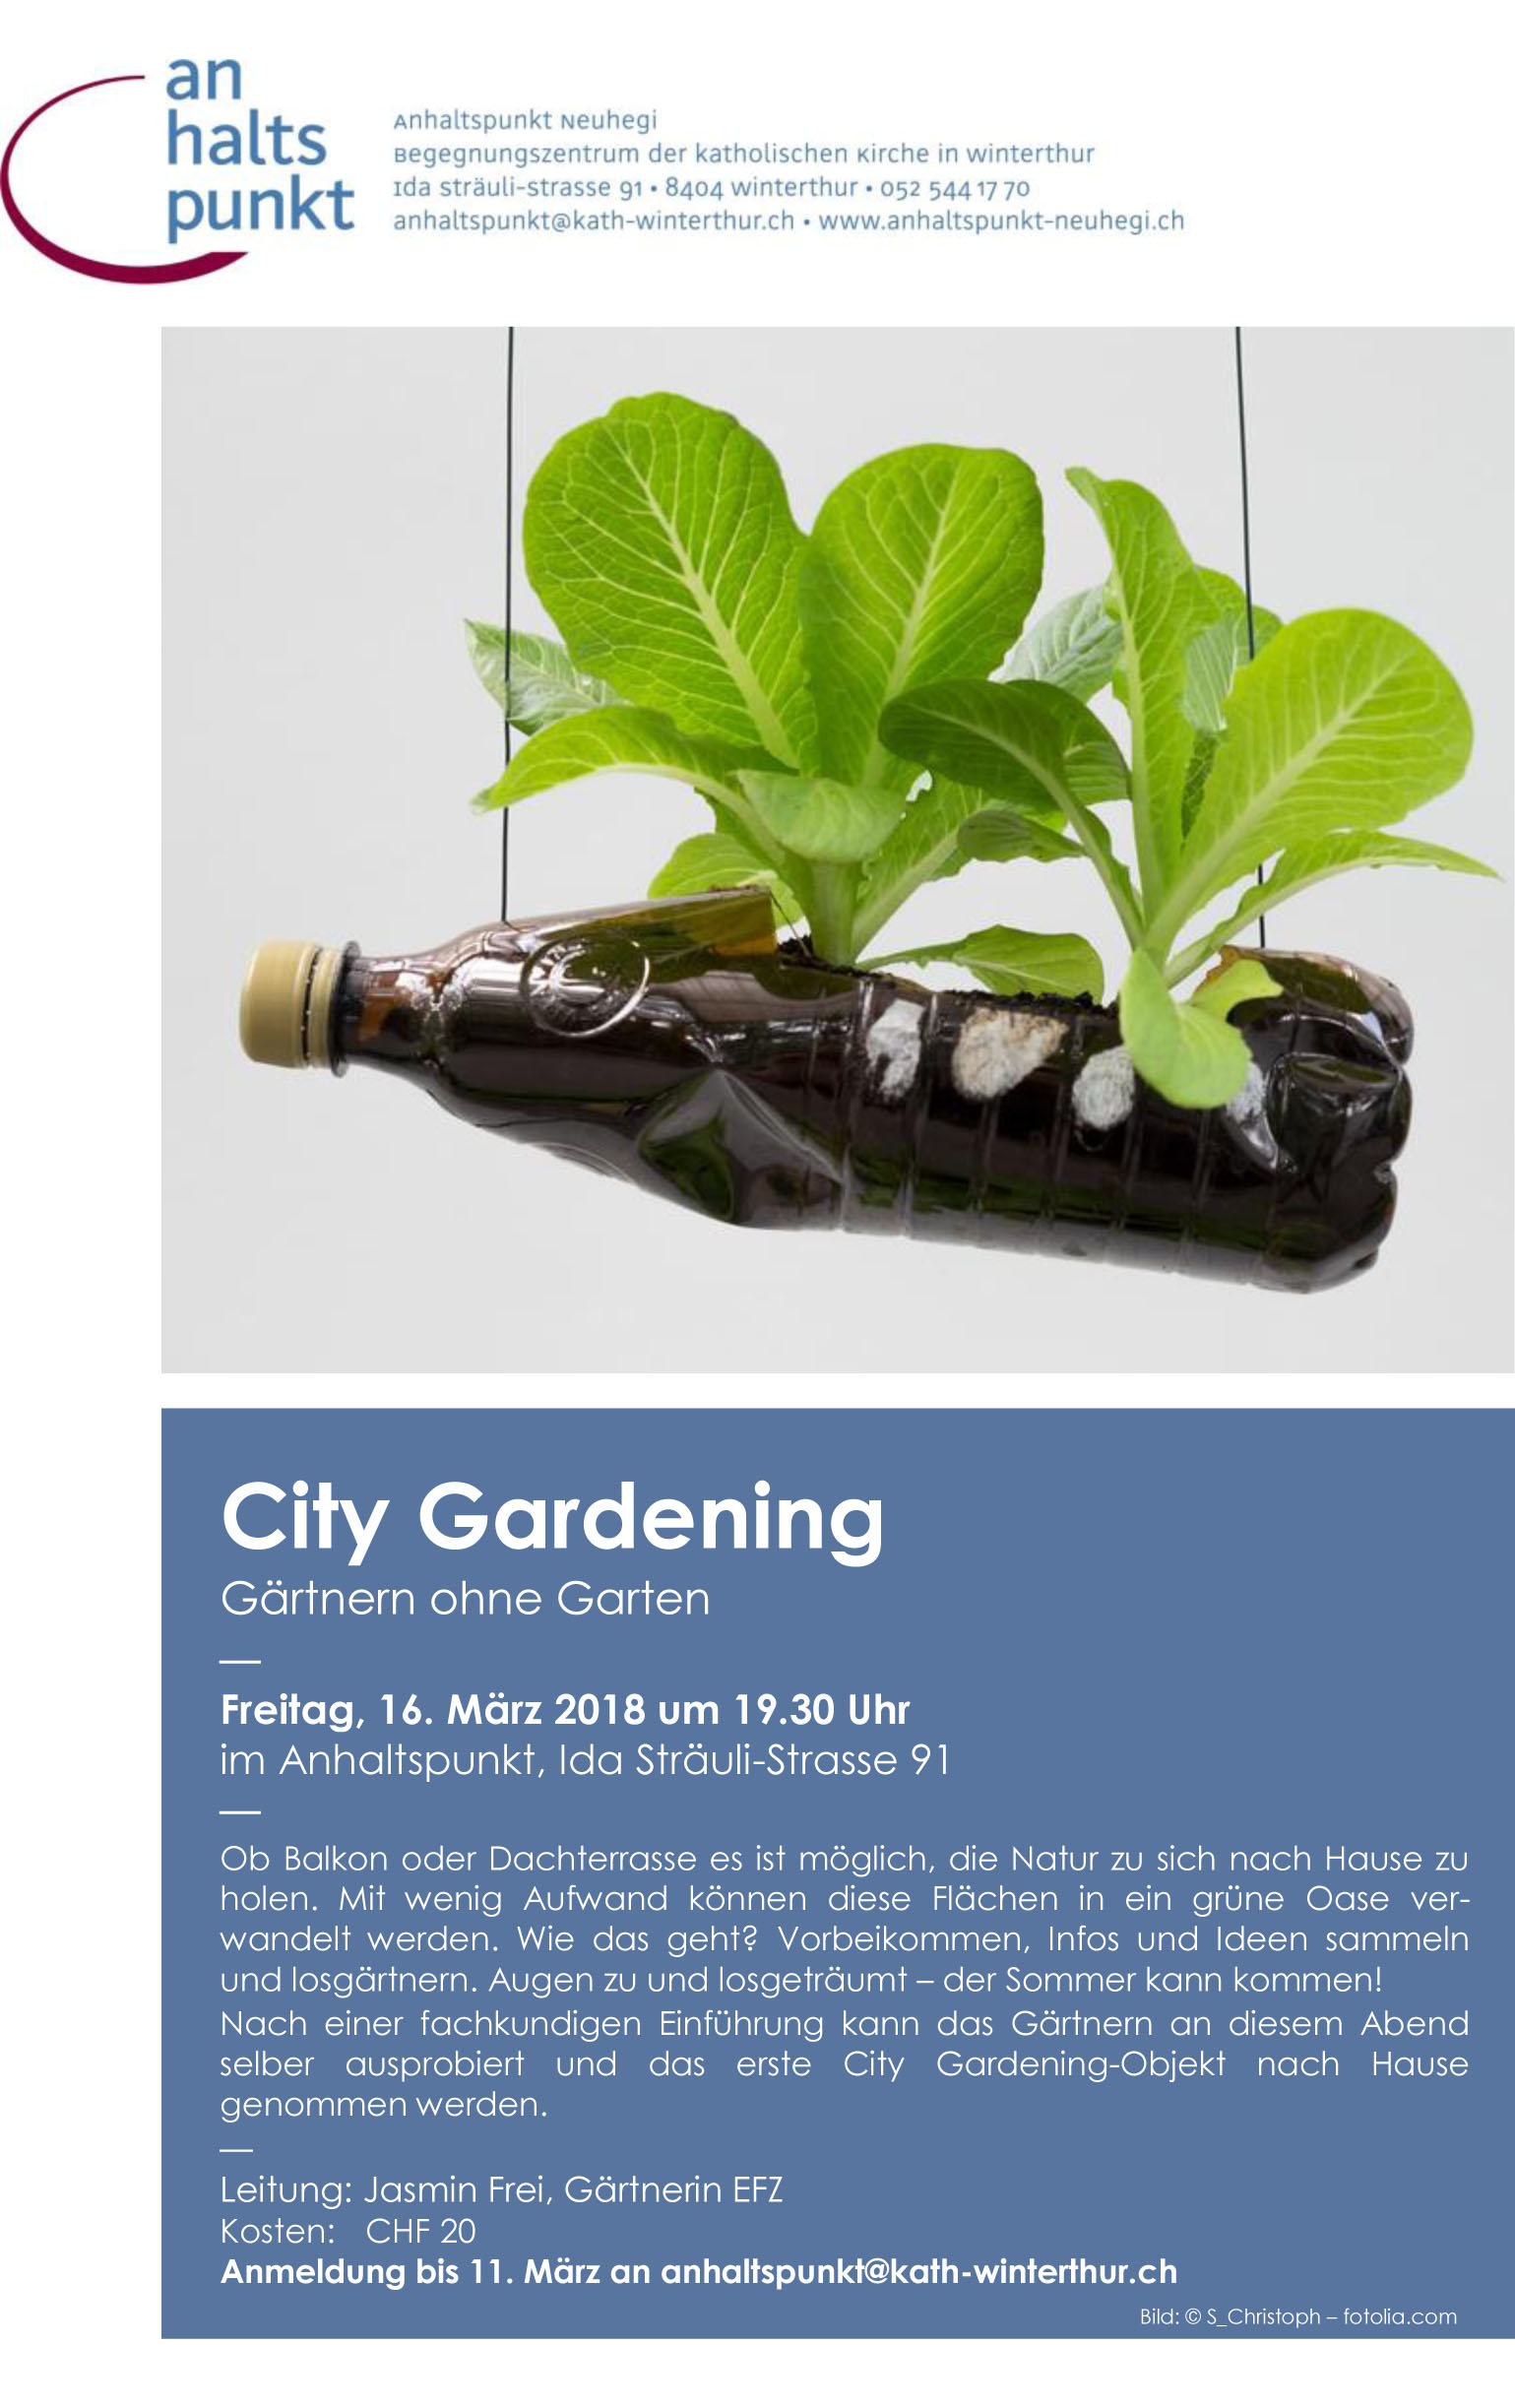 ahp City Gardening 18